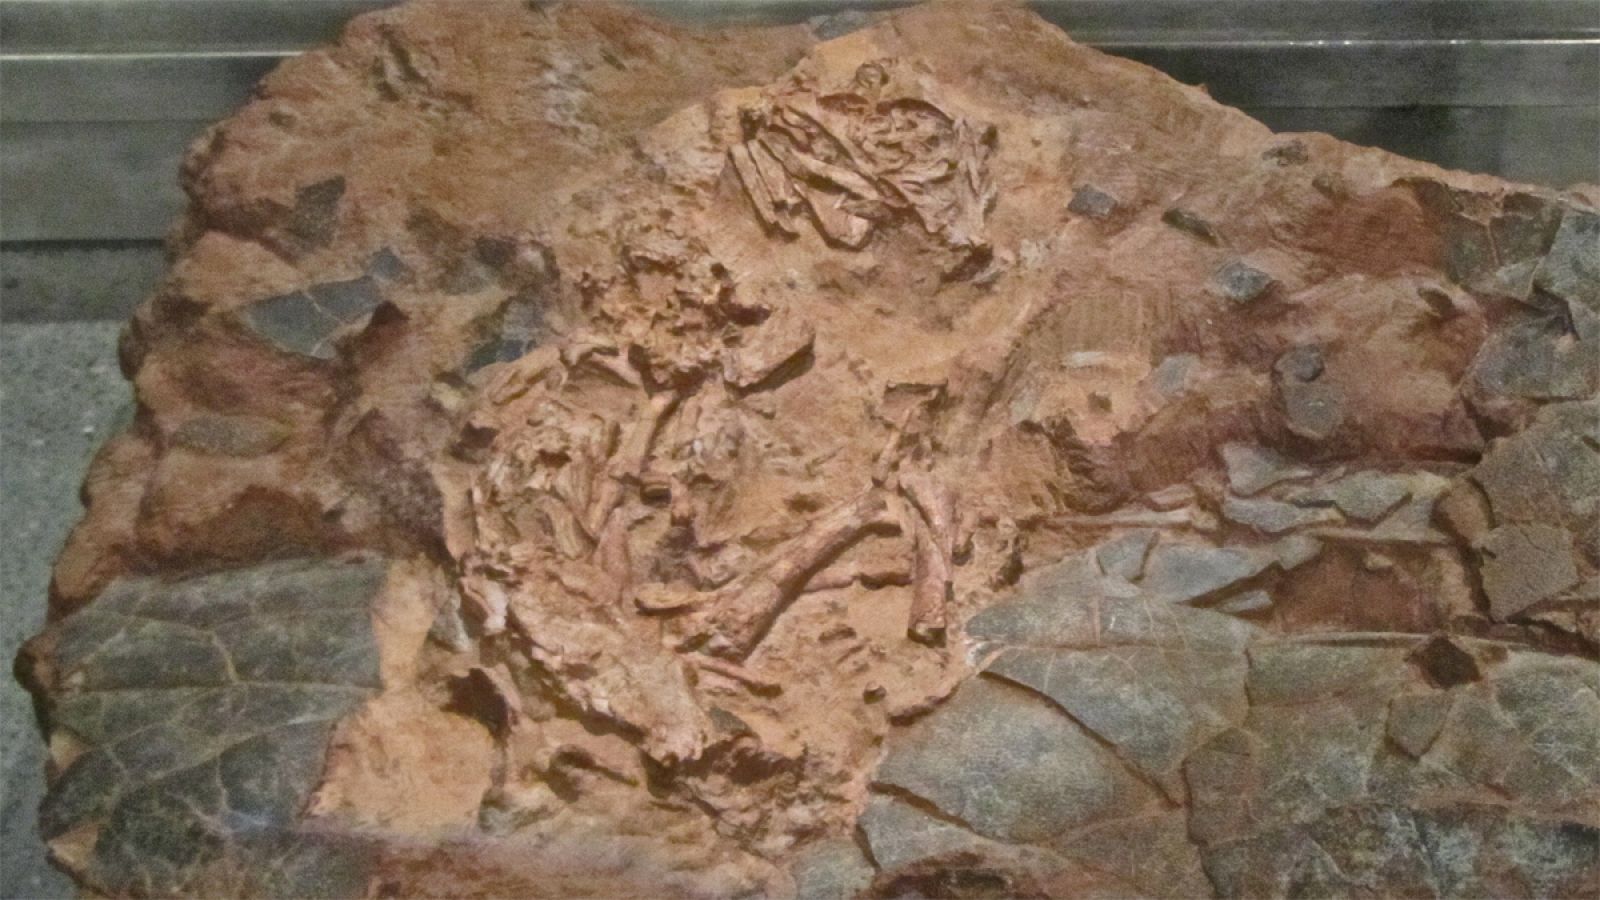 El esqueleto de embrión tiene aproximadamente 89-100 millones de años de antigüedad (Cretacio tardío).